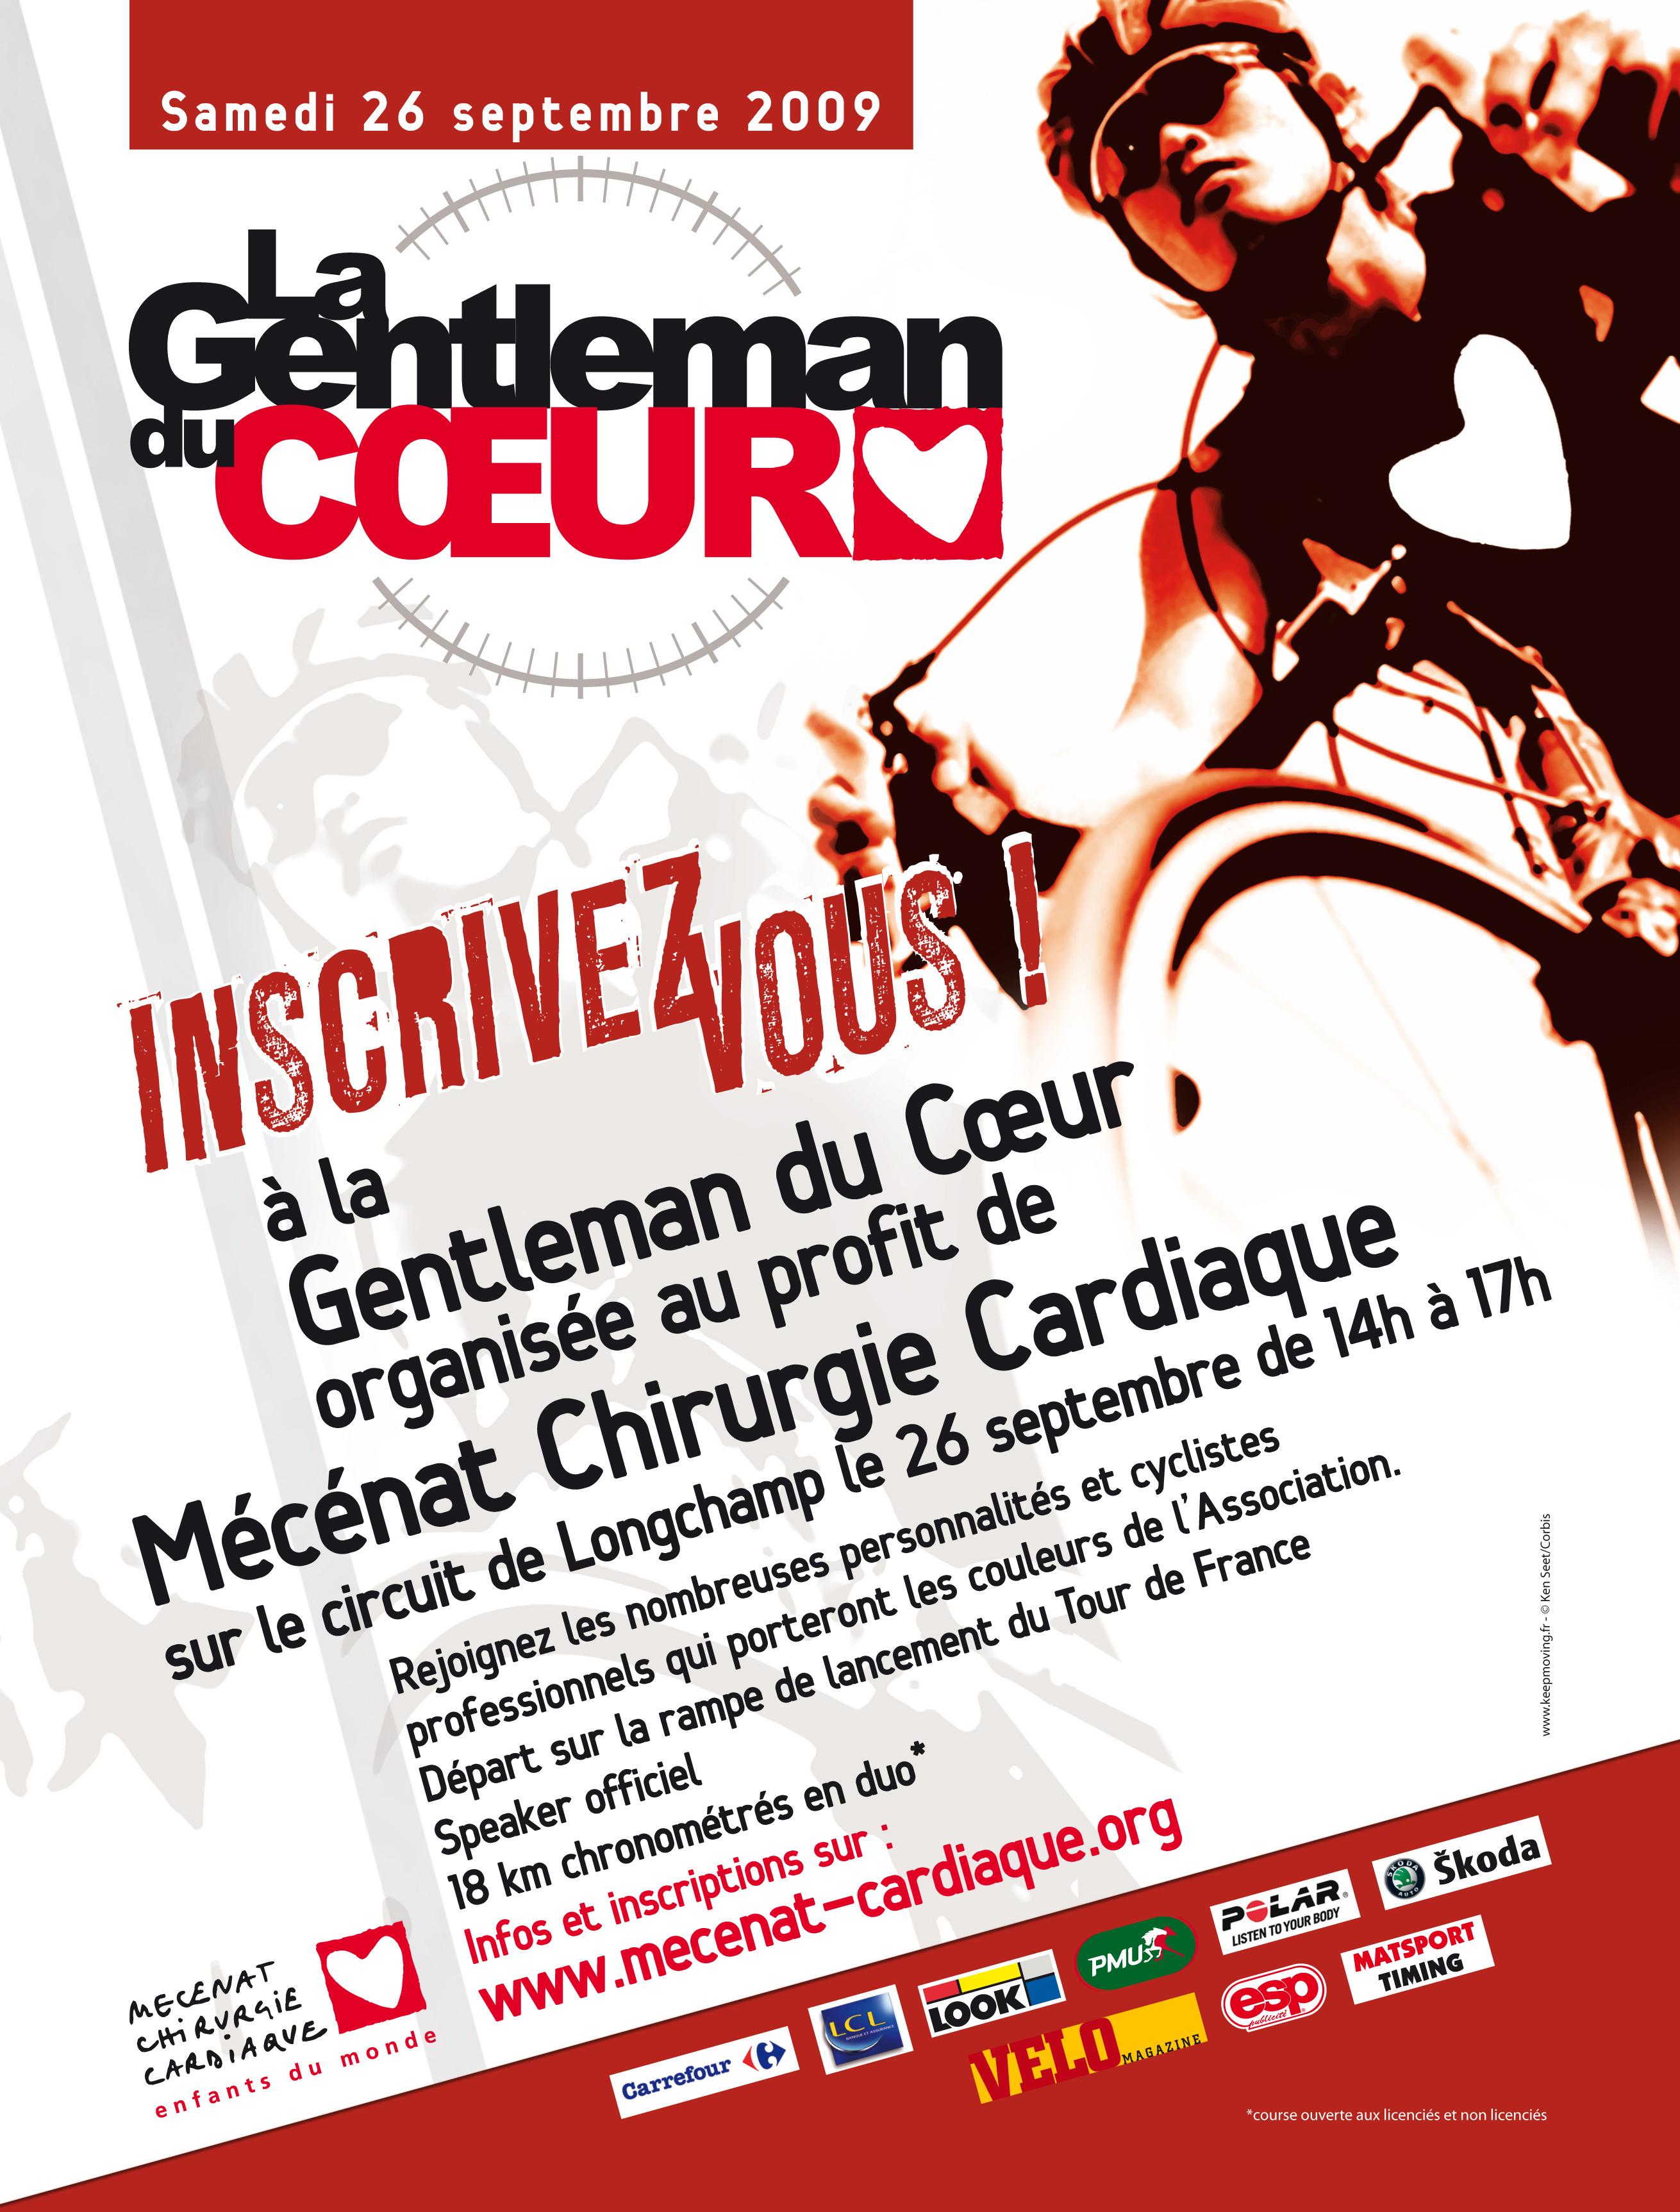 Inscrivez-vous à la Gentleman du Coeur - Samedi 26 septembre 2009